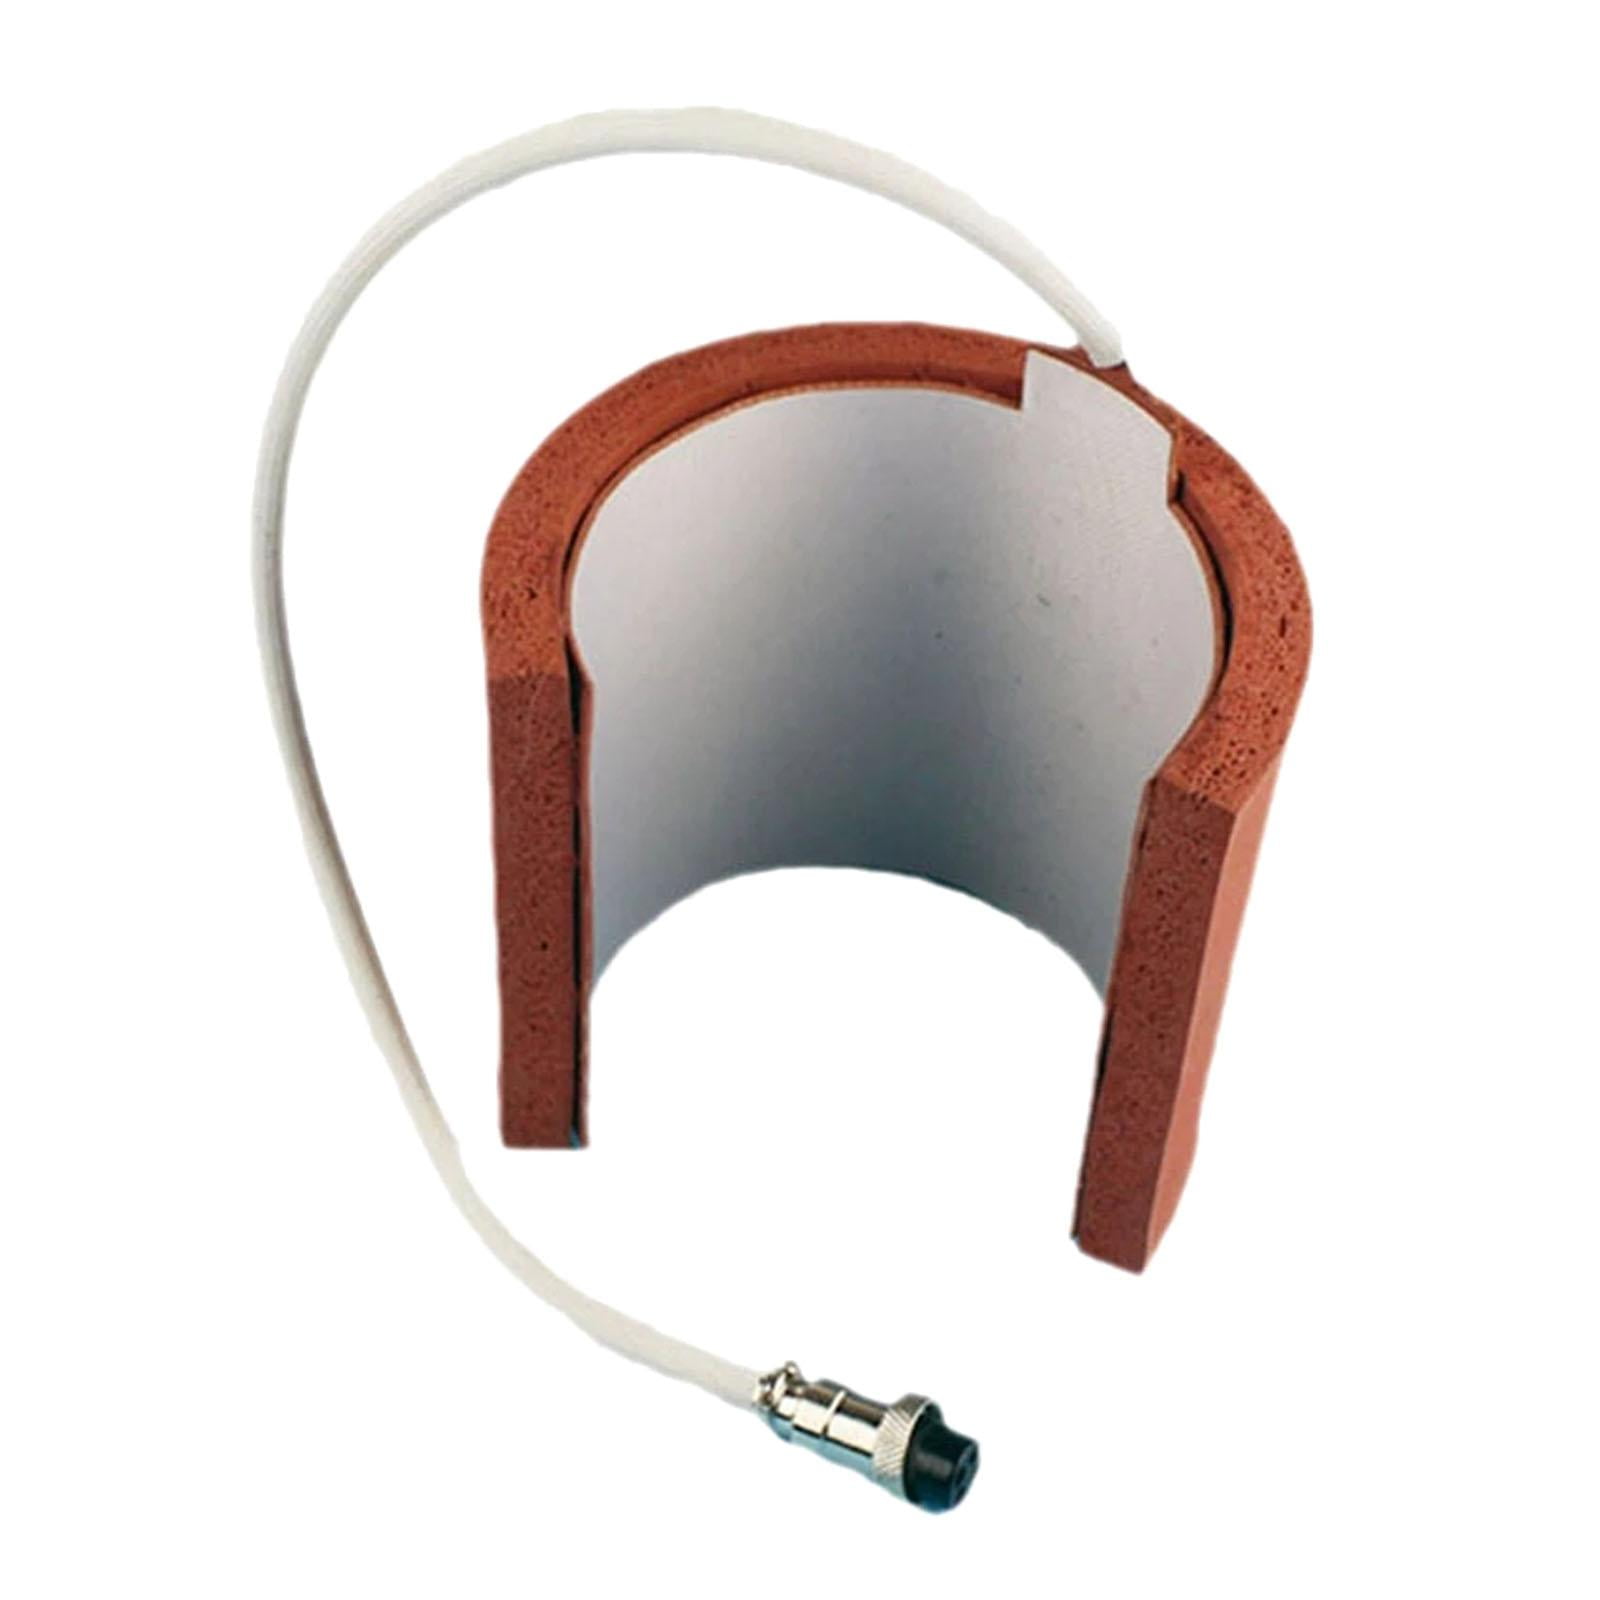 Mug Heater Mug Press Attachment 7.5-9.5cm Heat Press Machine Accessories 